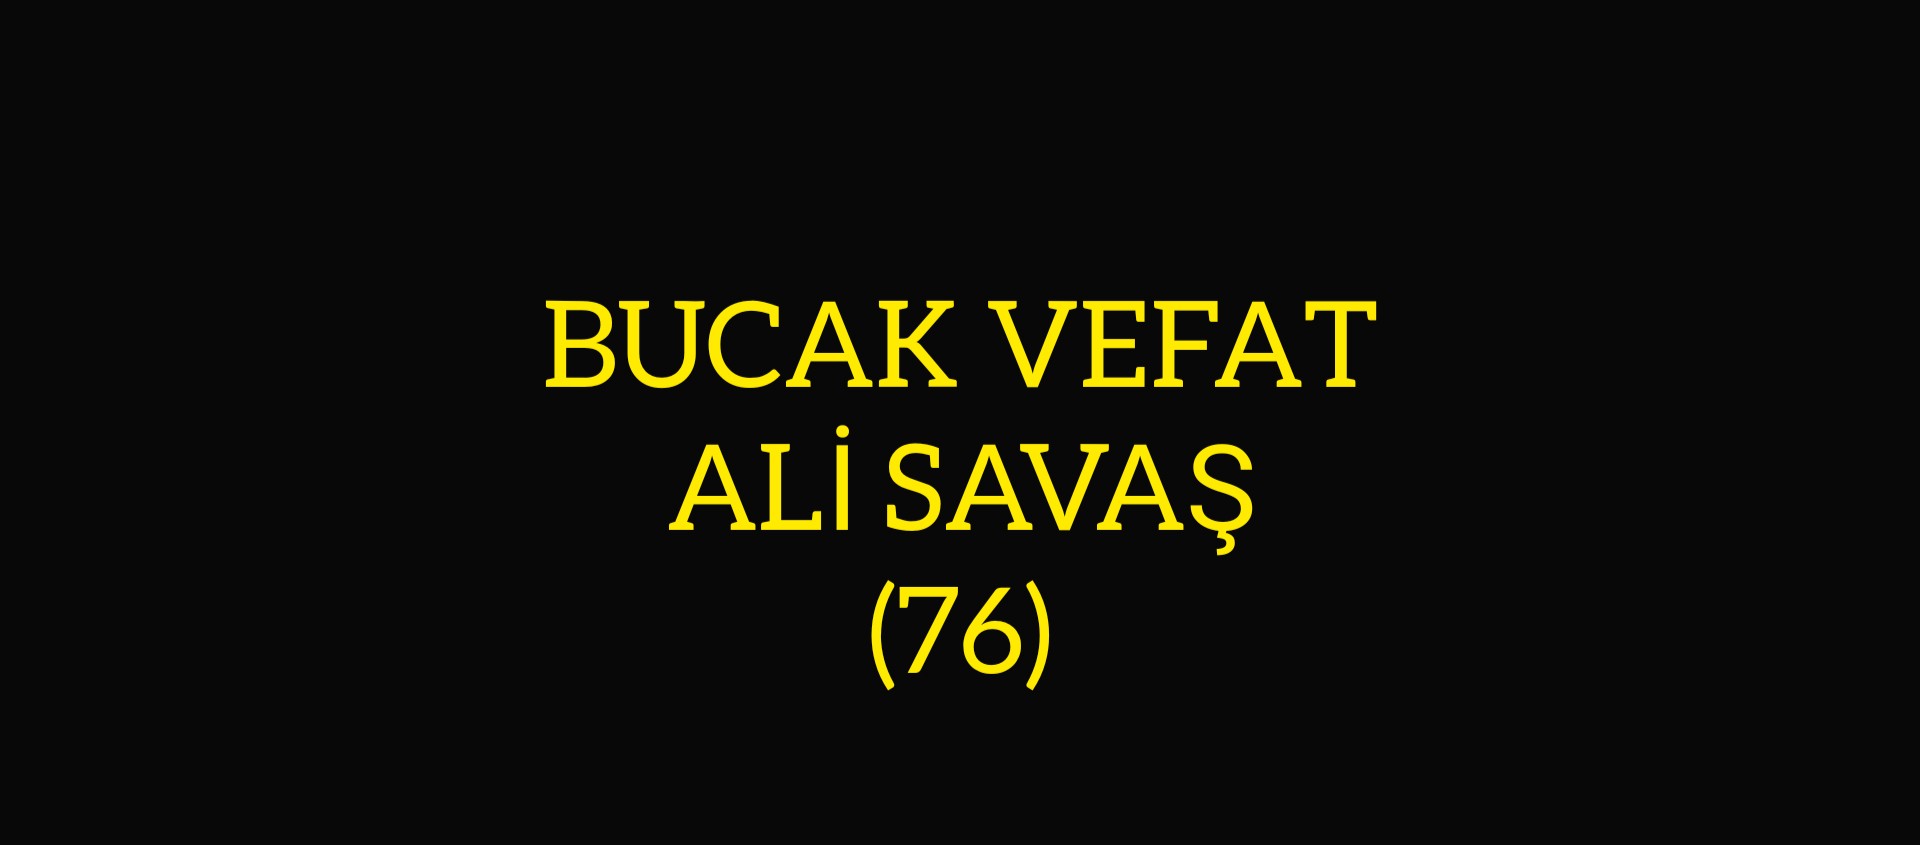 BUCAK VEFAT ALİ SAVAŞ (76)